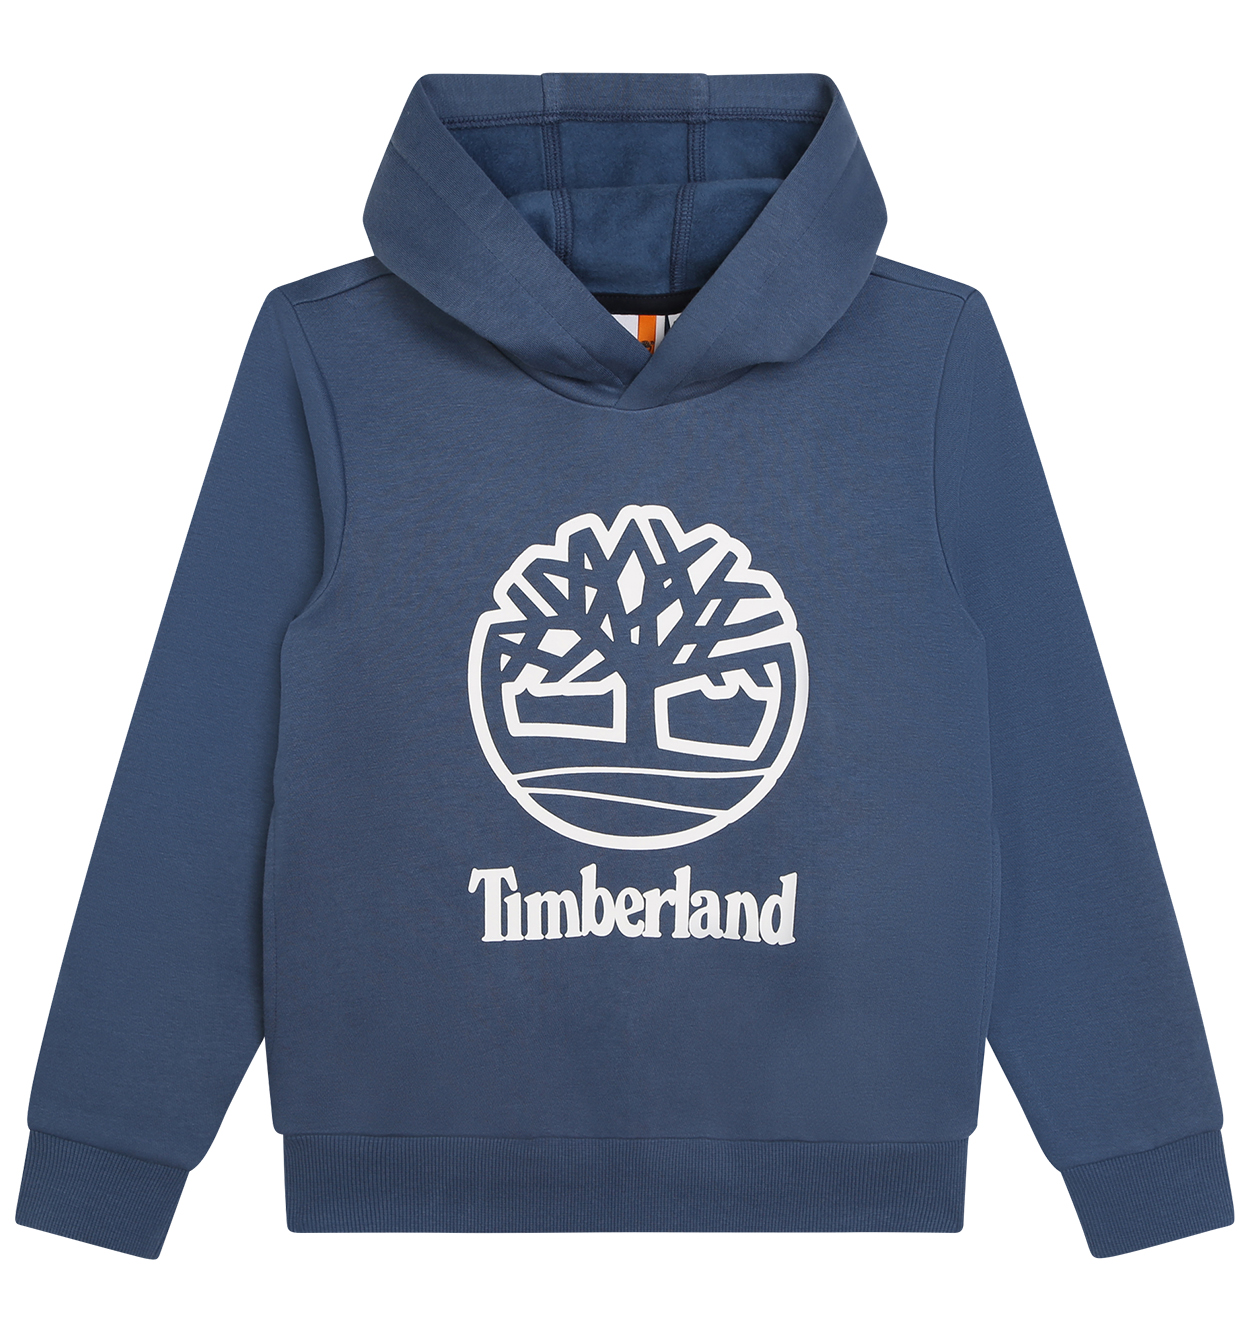 Sweat Junior Garçon Timberland coton avec manches longues et col à capuche indigo